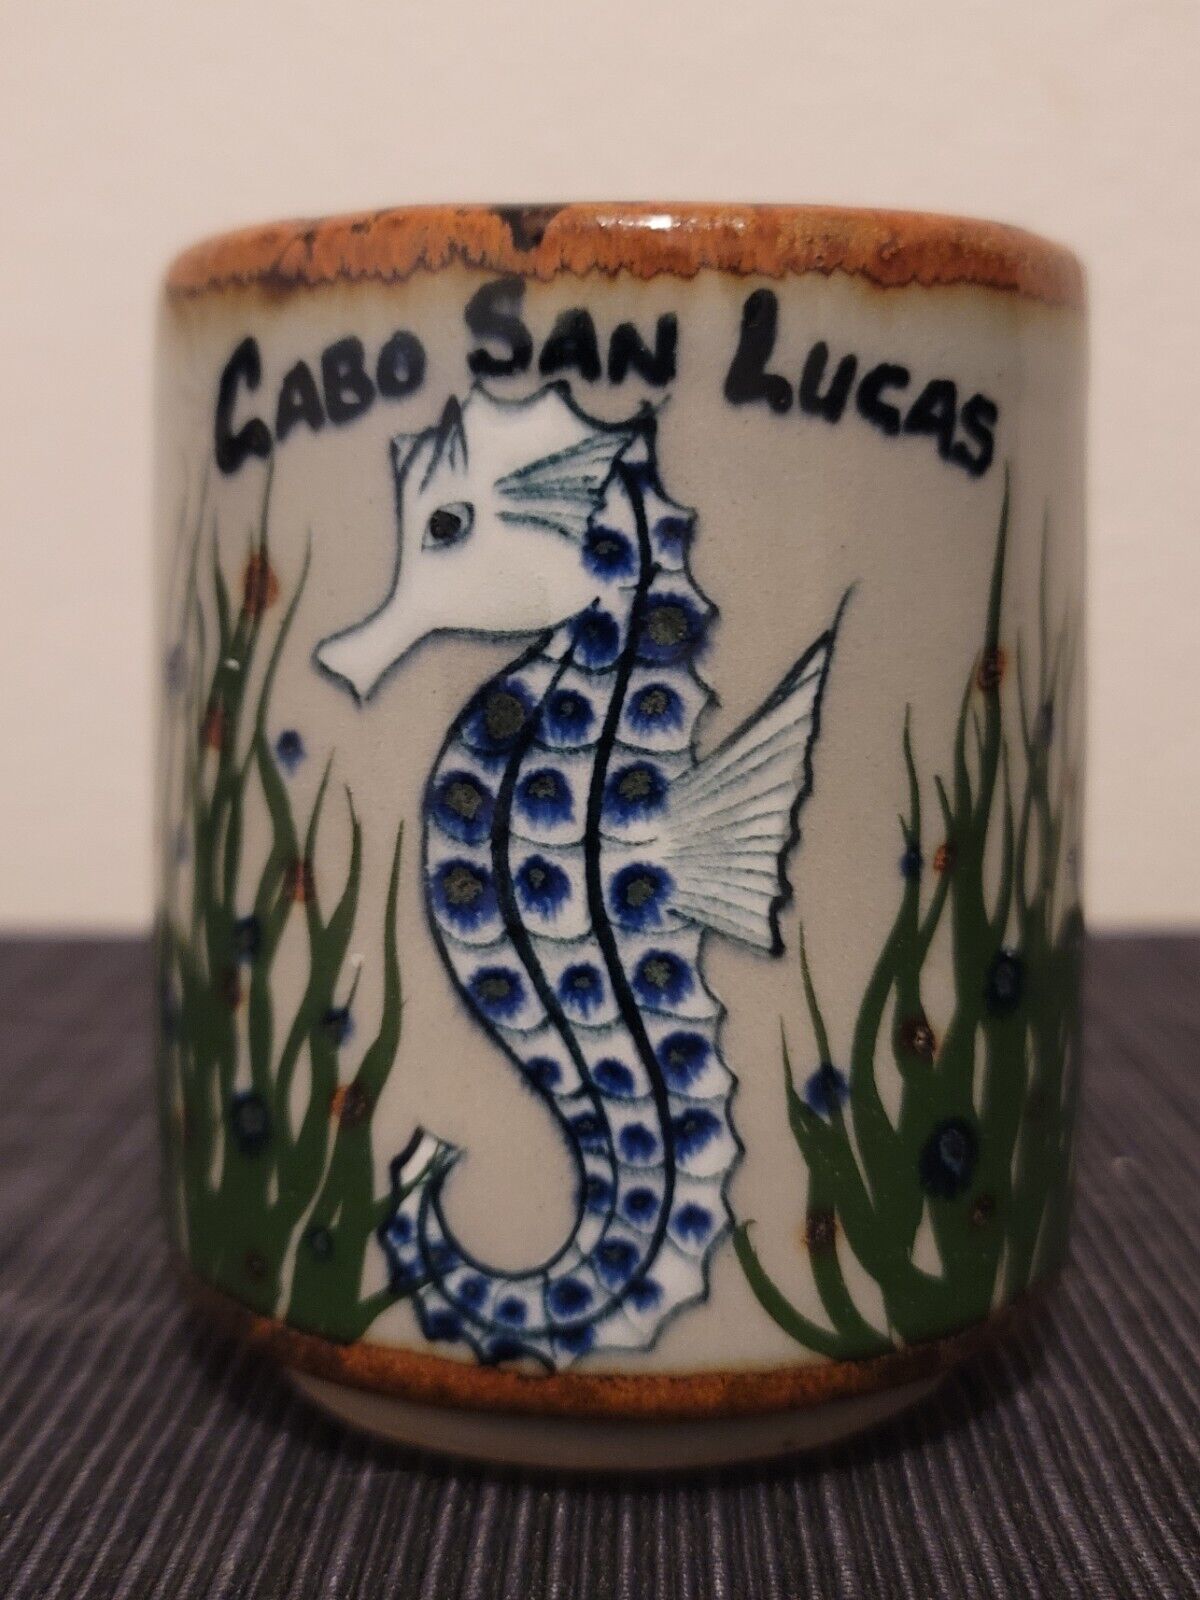 Cabo San Lucas Mexico Ceramic Mug 15 Oz